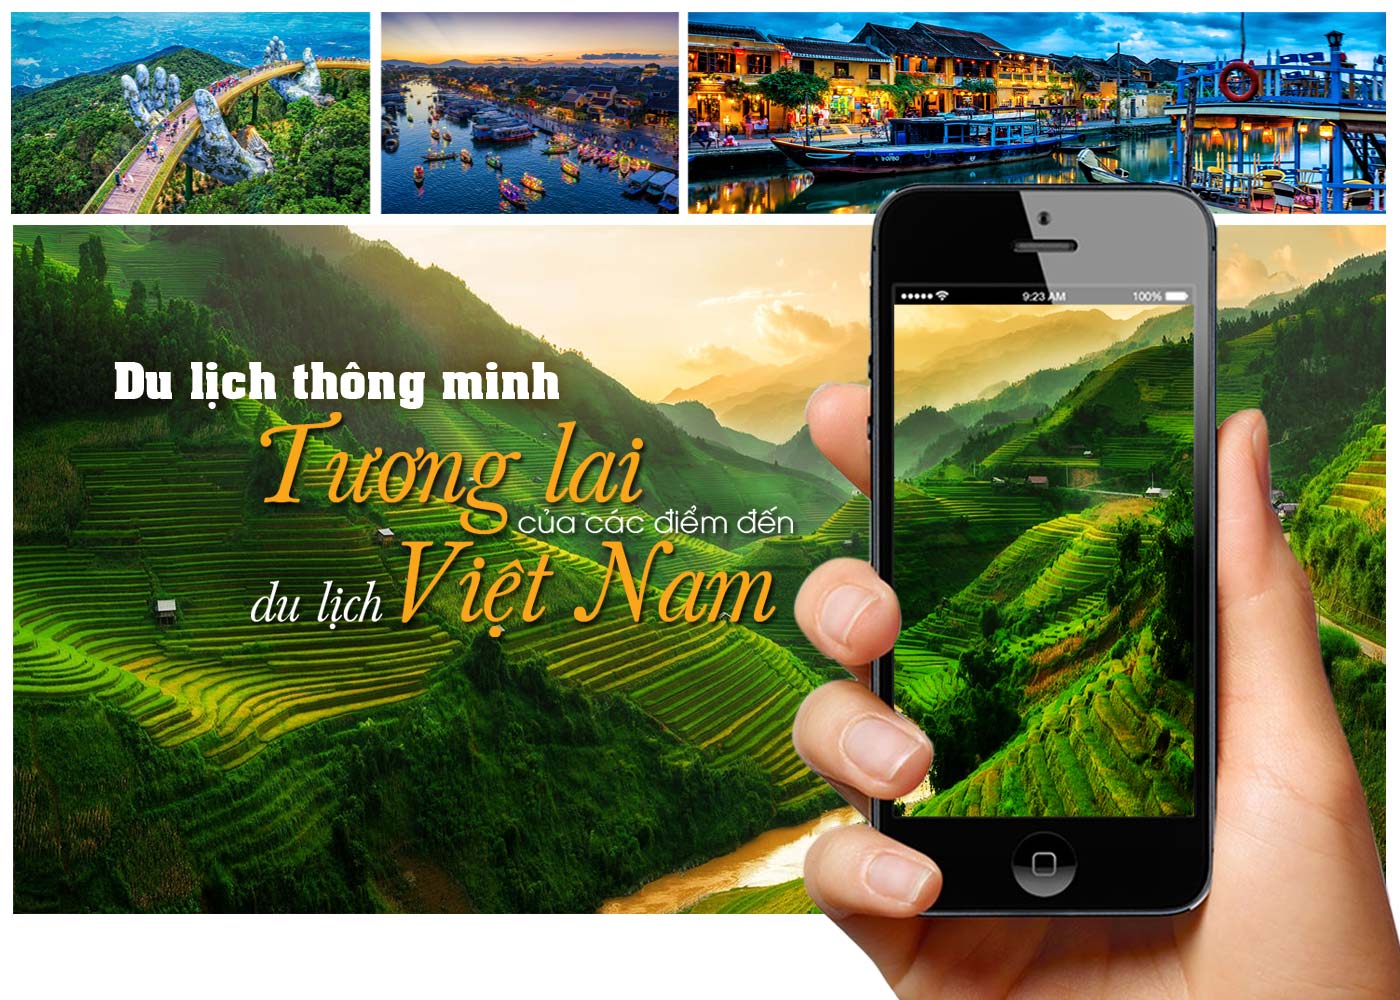 Du lịch thông minh - tương lai của các điểm đến du lịch Việt Nam - Ảnh 1